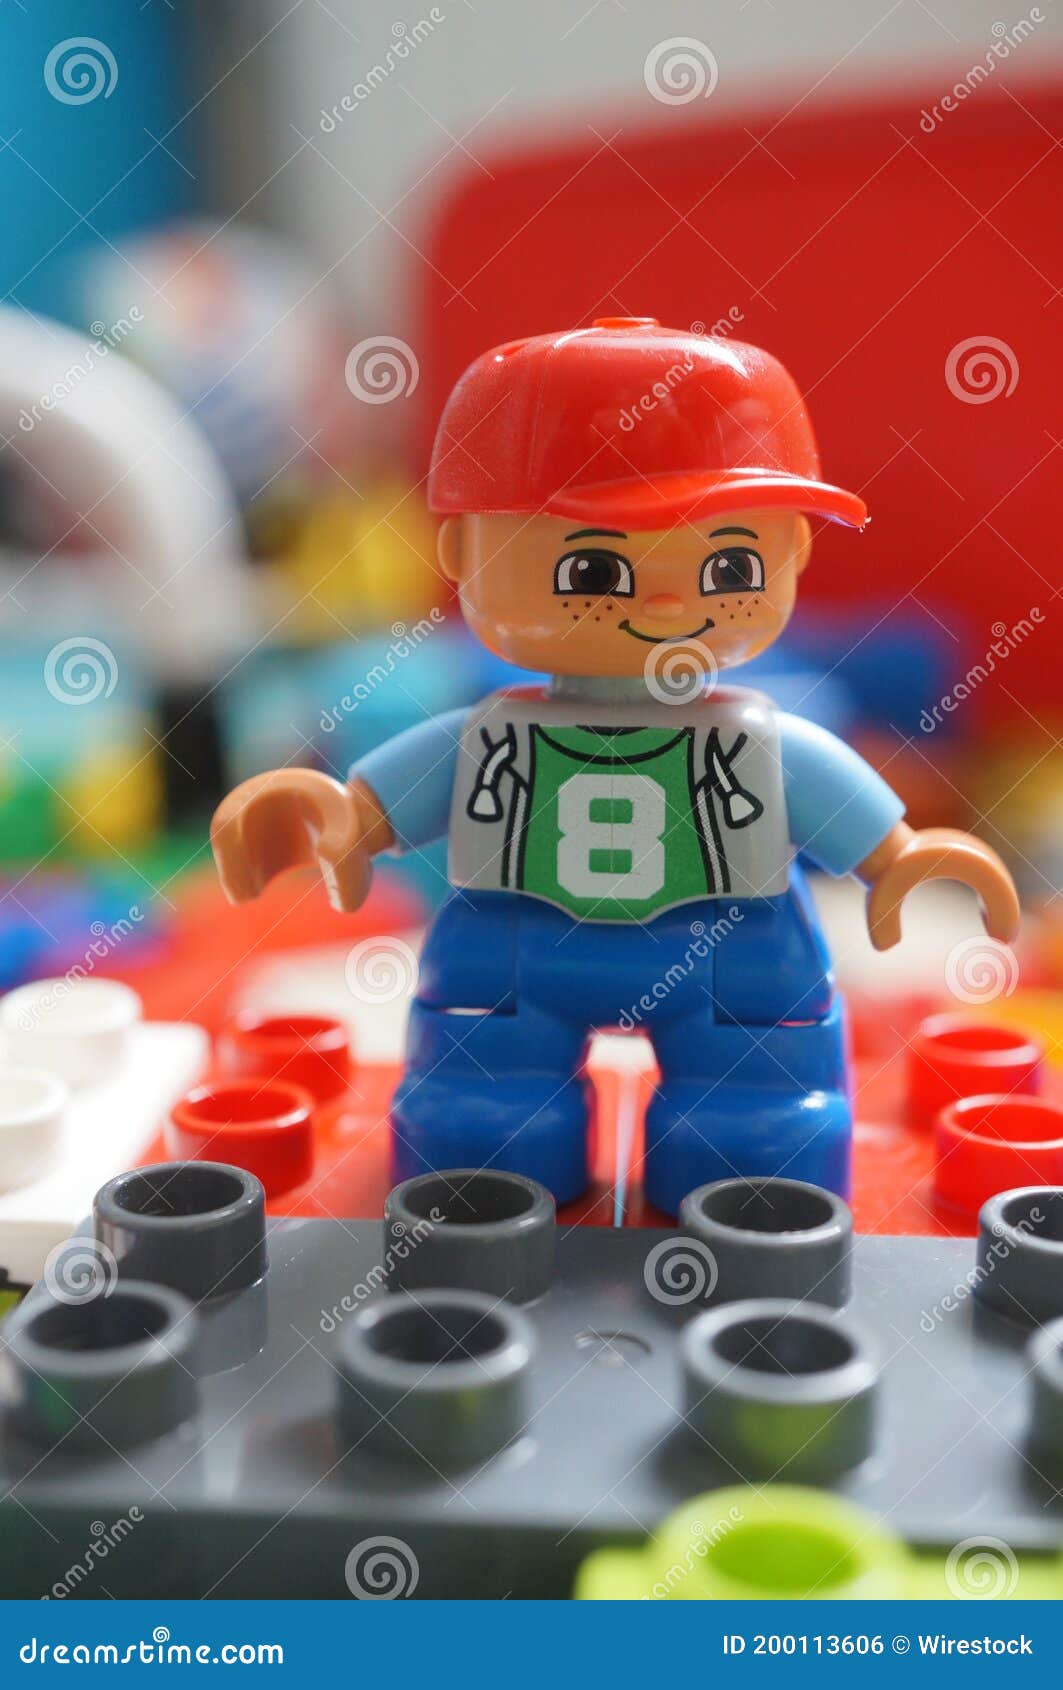 Lego Duplo Redactionele Foto. Image Of Plastiek, Jongen - 200113606